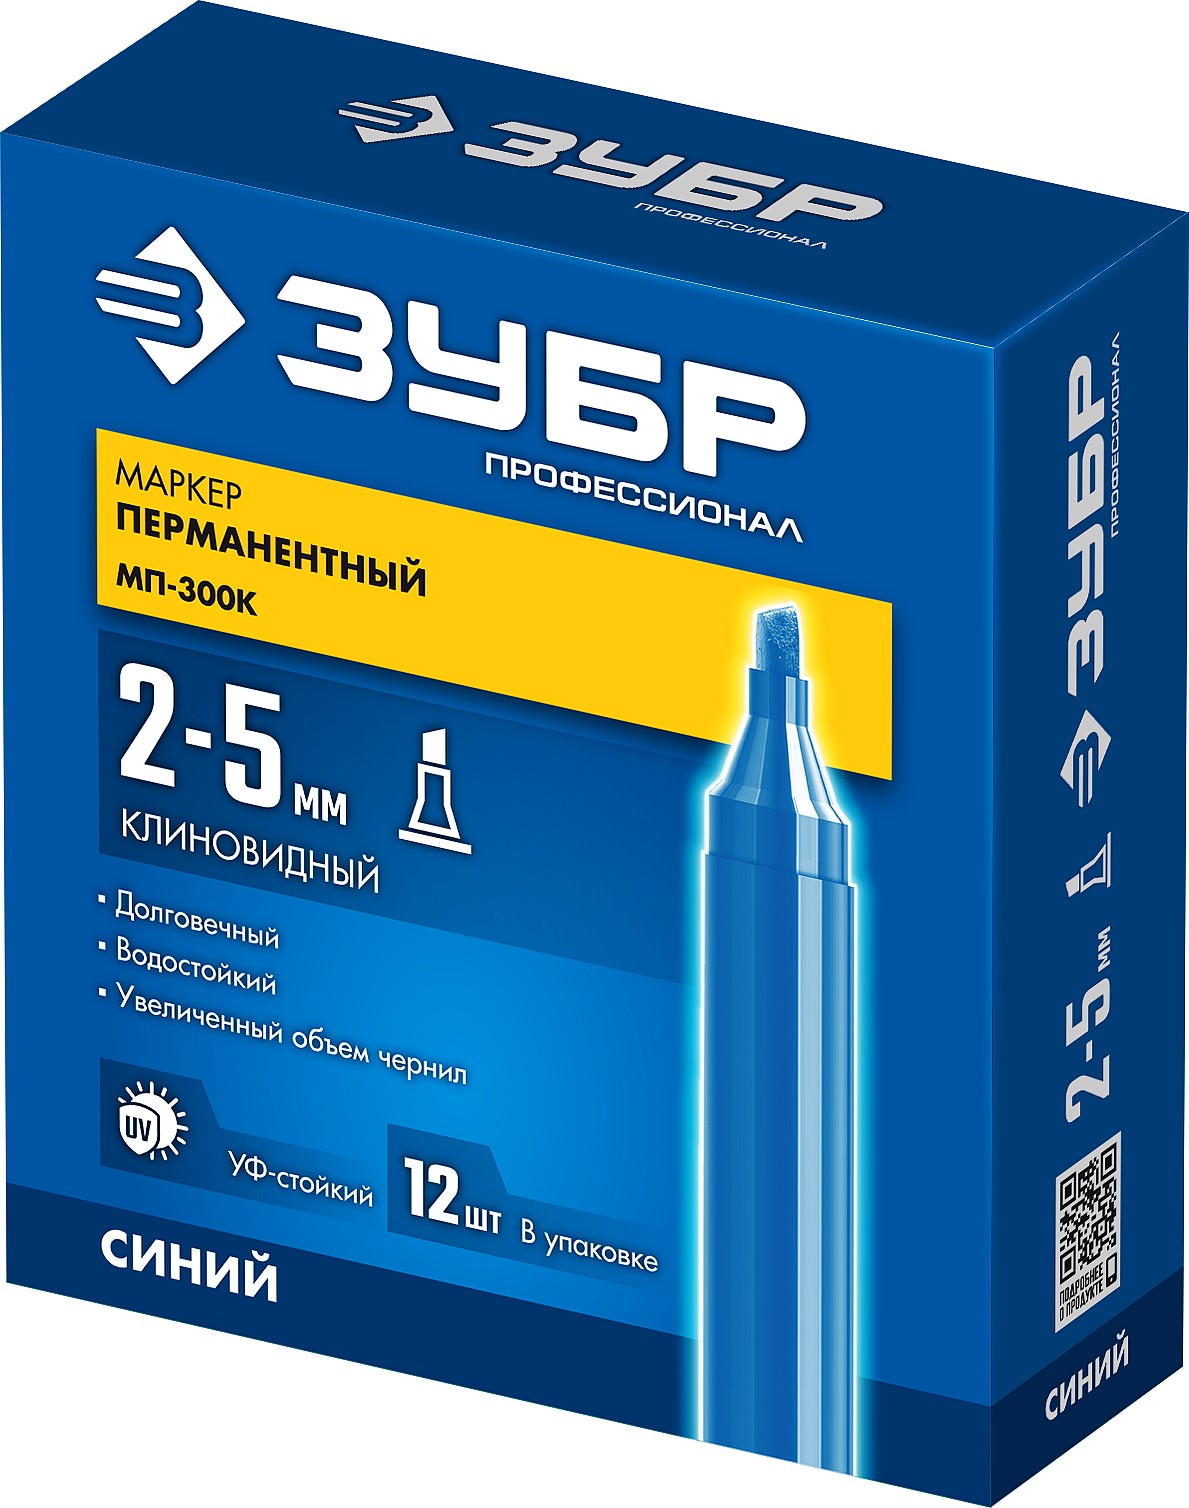 ЗУБР МП-300К 2-5 мм, клиновидный, синий, Перманентный маркер, ПРОФЕССИОНАЛ (06323-7)